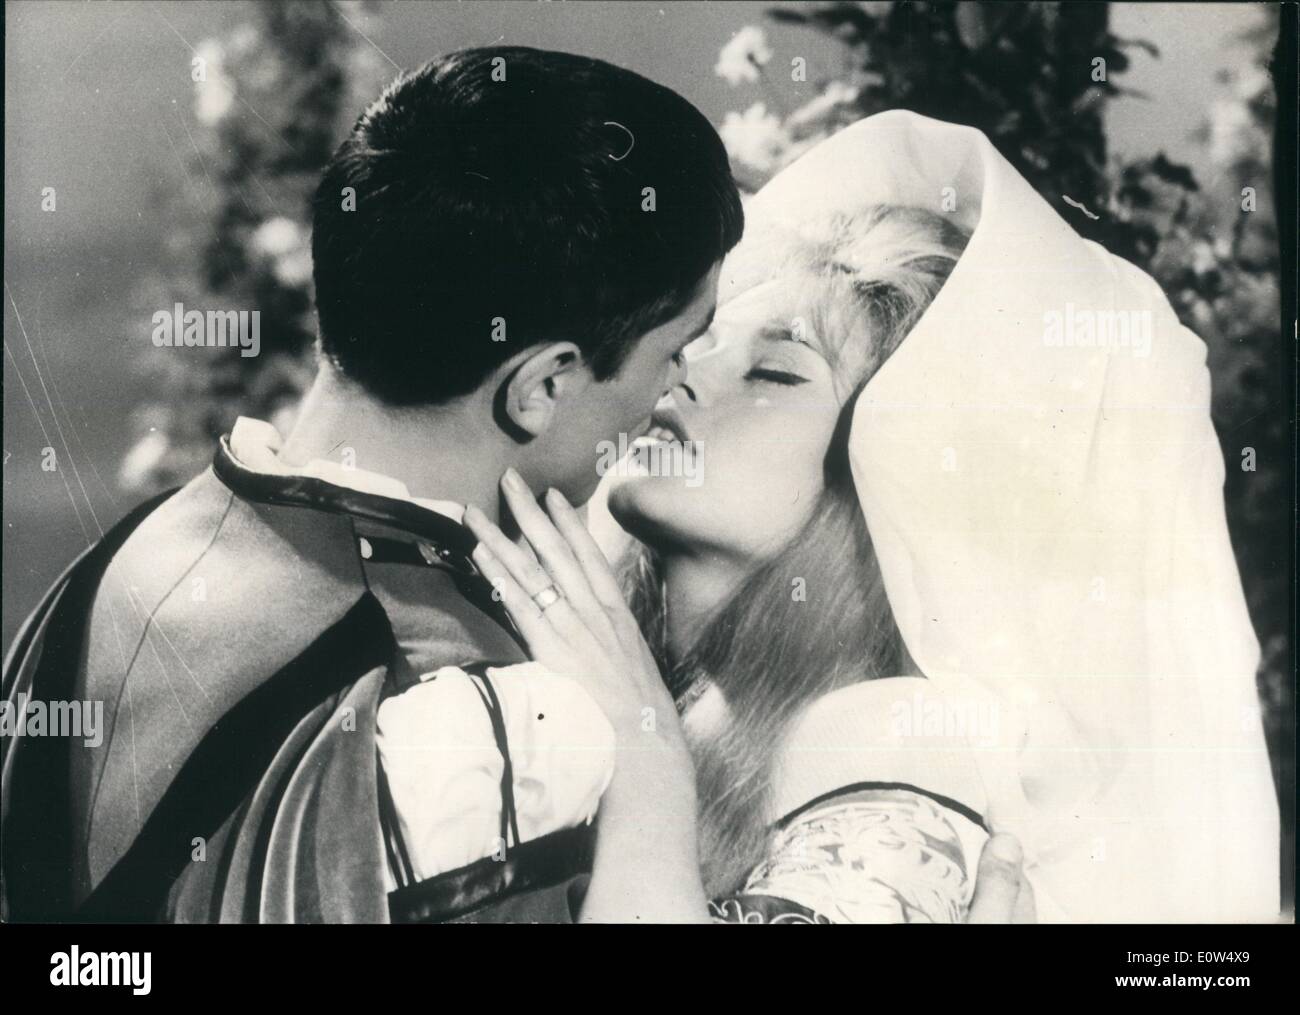 Mai 05, 1961 - Co-stars avec Alain Delon dans ''célèbre'' amoureux : Brigitte Bardot Stars dans l'un des sketches du film ''célèbre'' Les Amoureux de relancer certaines Romances célèbres au cours des siècles. B.B. Emprunte l'une jeune fille de Bavière avec laquelle le Prince Albert de Bavière (Alain Delon) tombe amoureux. Je lvers viennent à une fin tragique Photo montre Brigitte Bardot et Alain Delon dans une scène du film. Banque D'Images